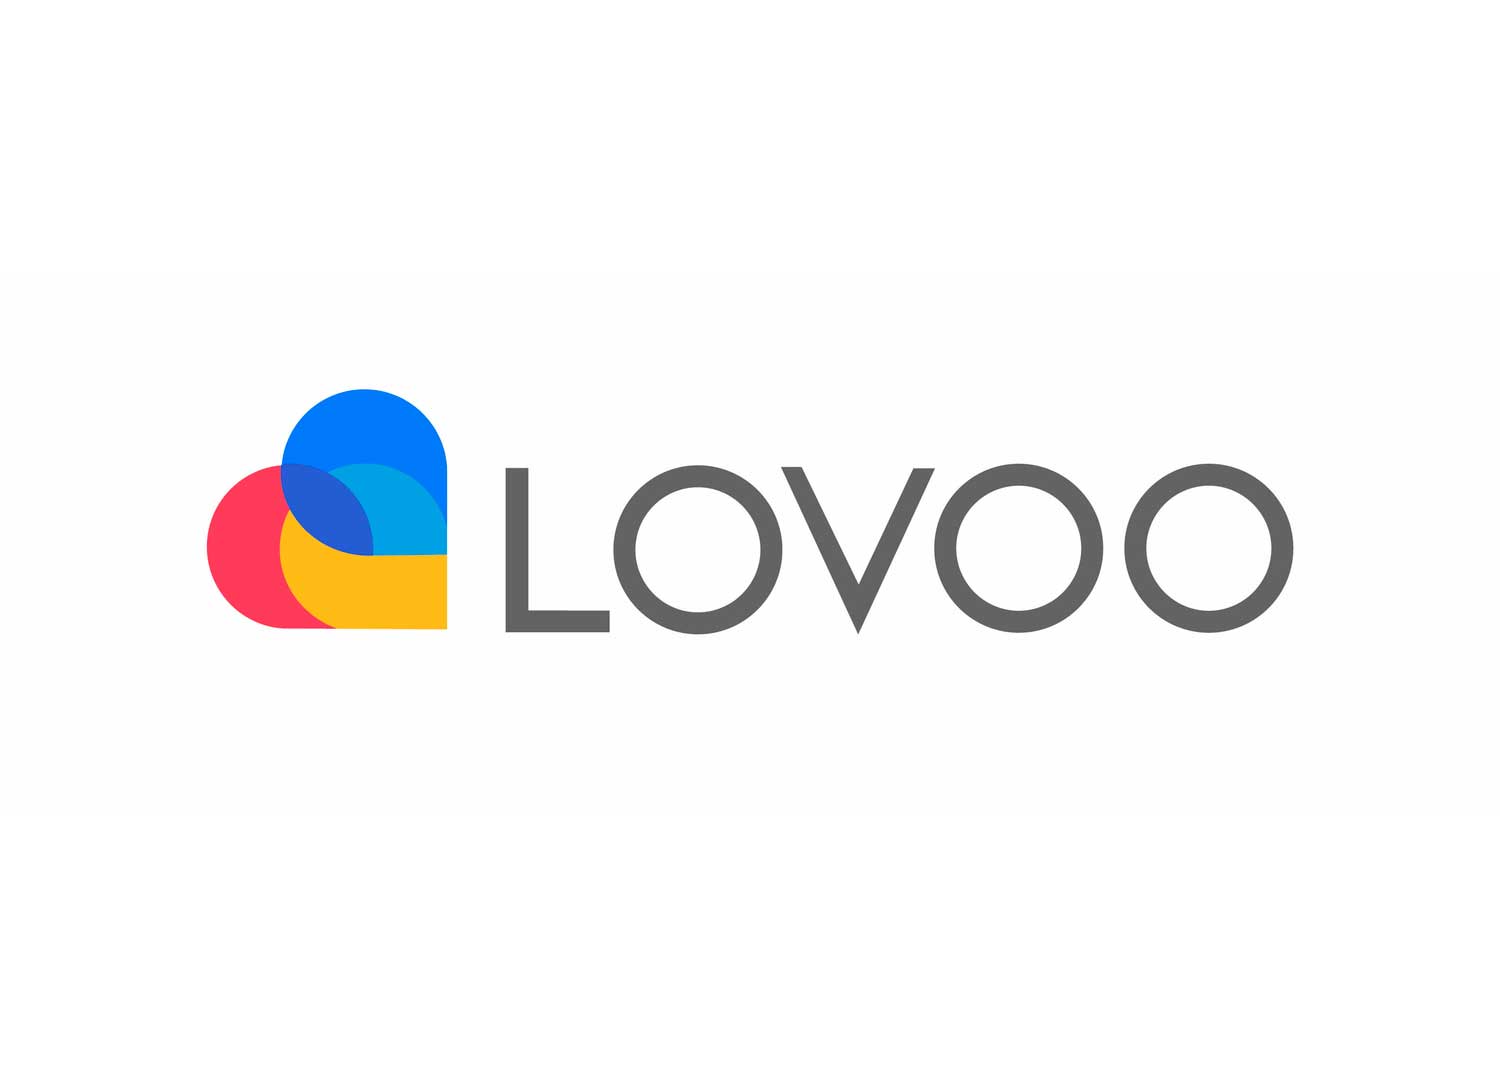 Lovoo 2022 Dating समीक्षा करें - क्या यह साइट अच्छी है या एक घोटाला है?